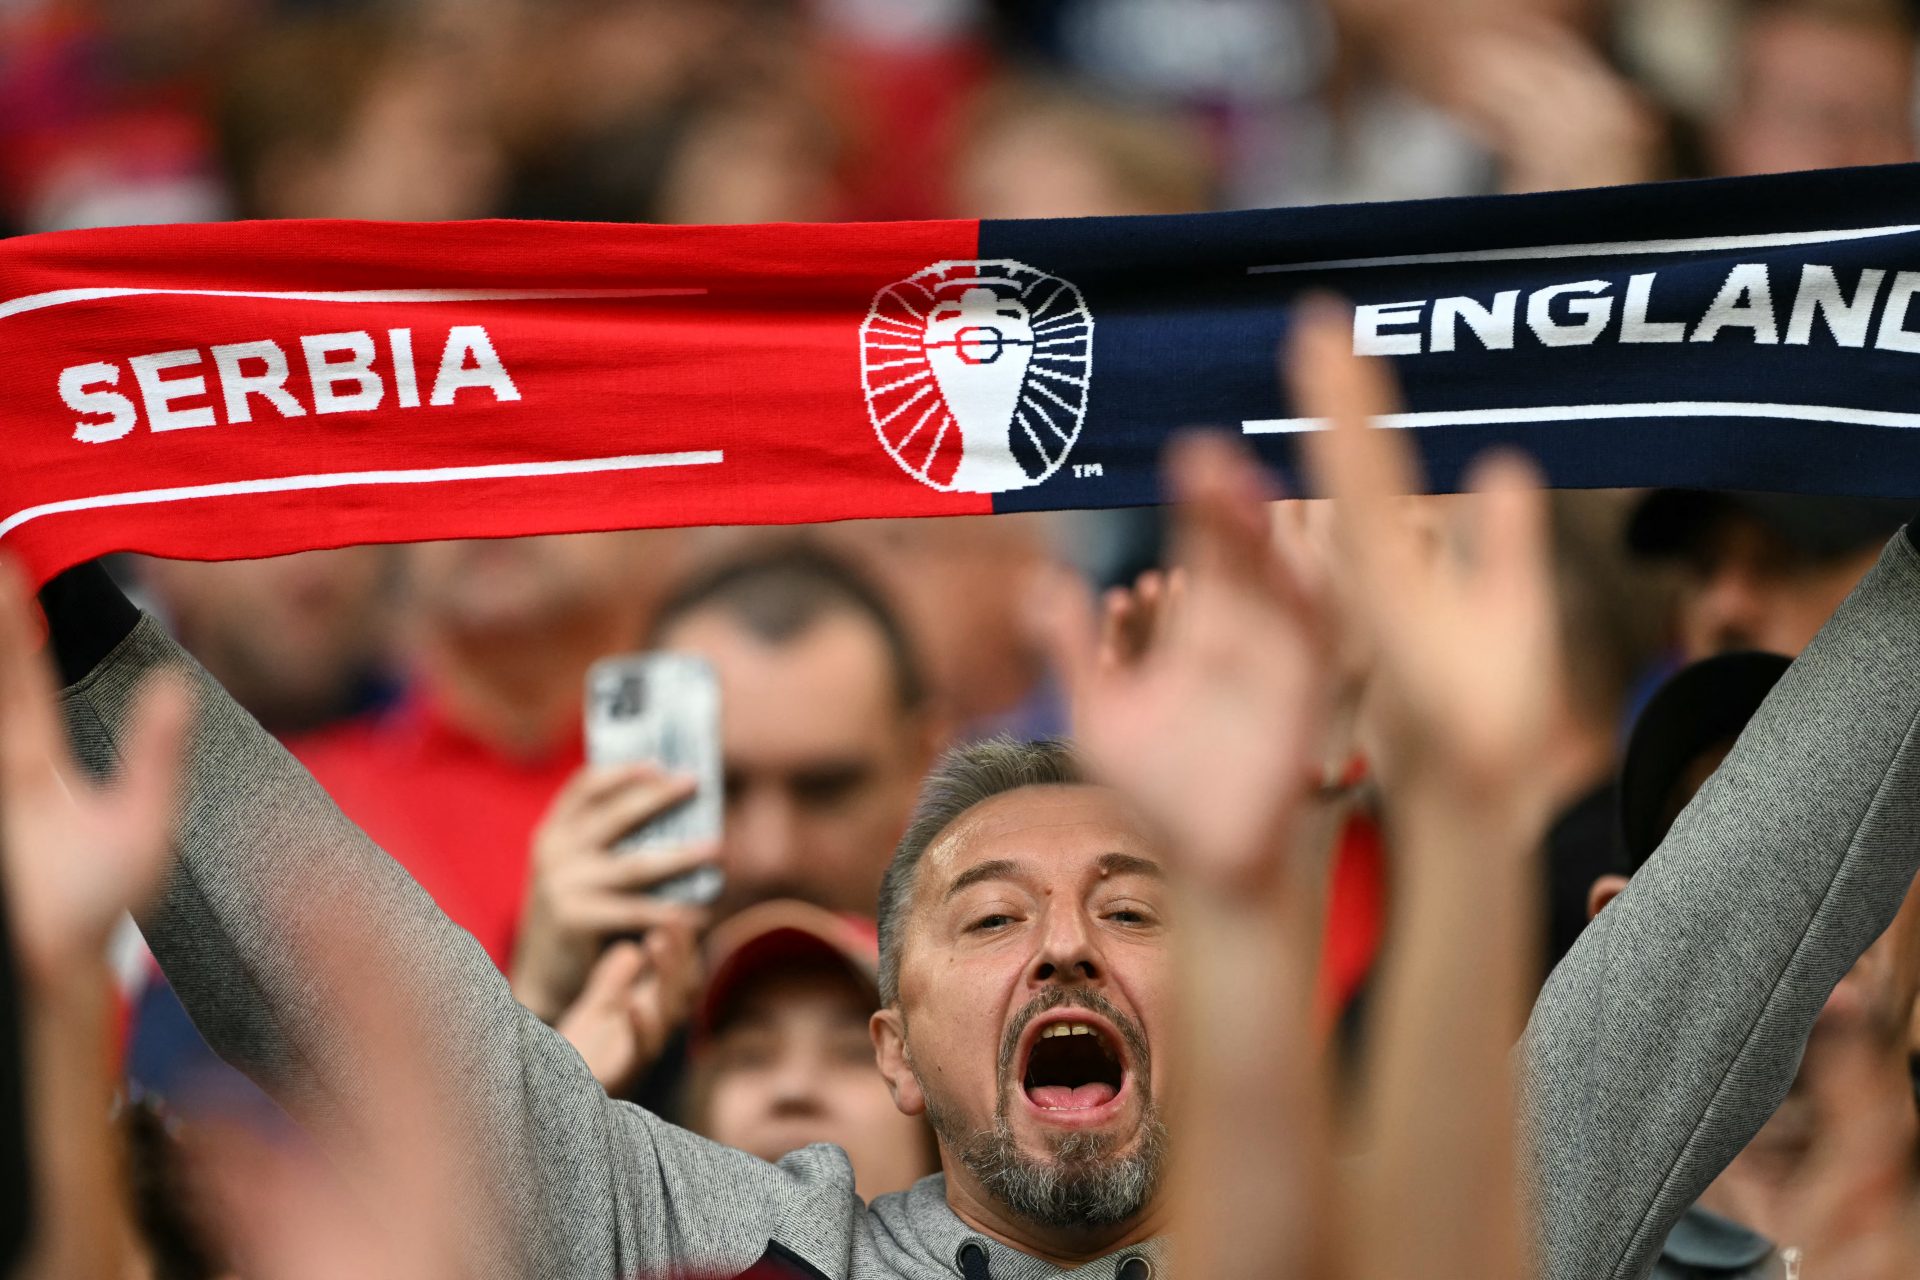 Il mistero del tifoso inglese addormentato allo stadio durante Inghilterra-Serbia: la UEFA smentisce